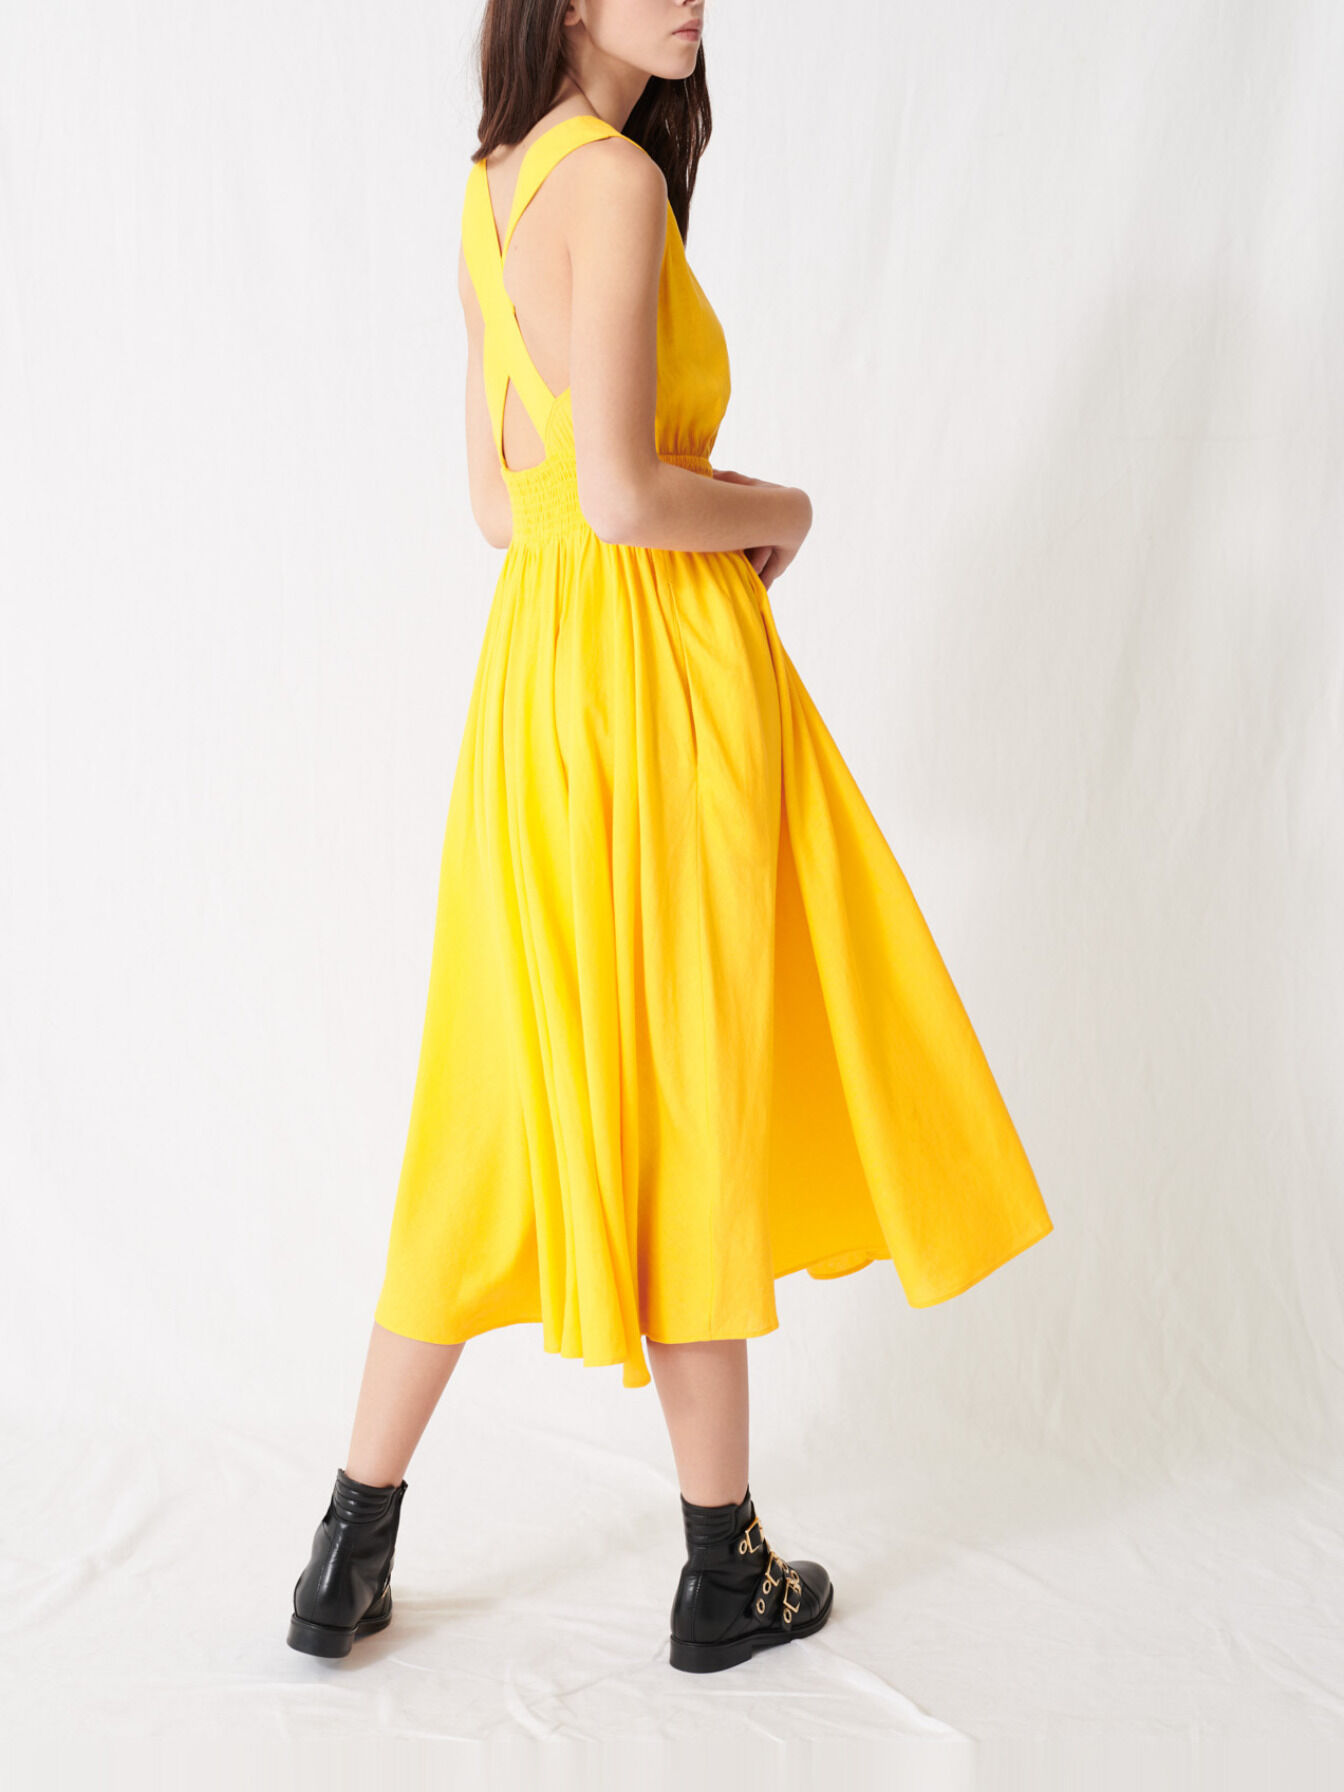 yellow linen dress